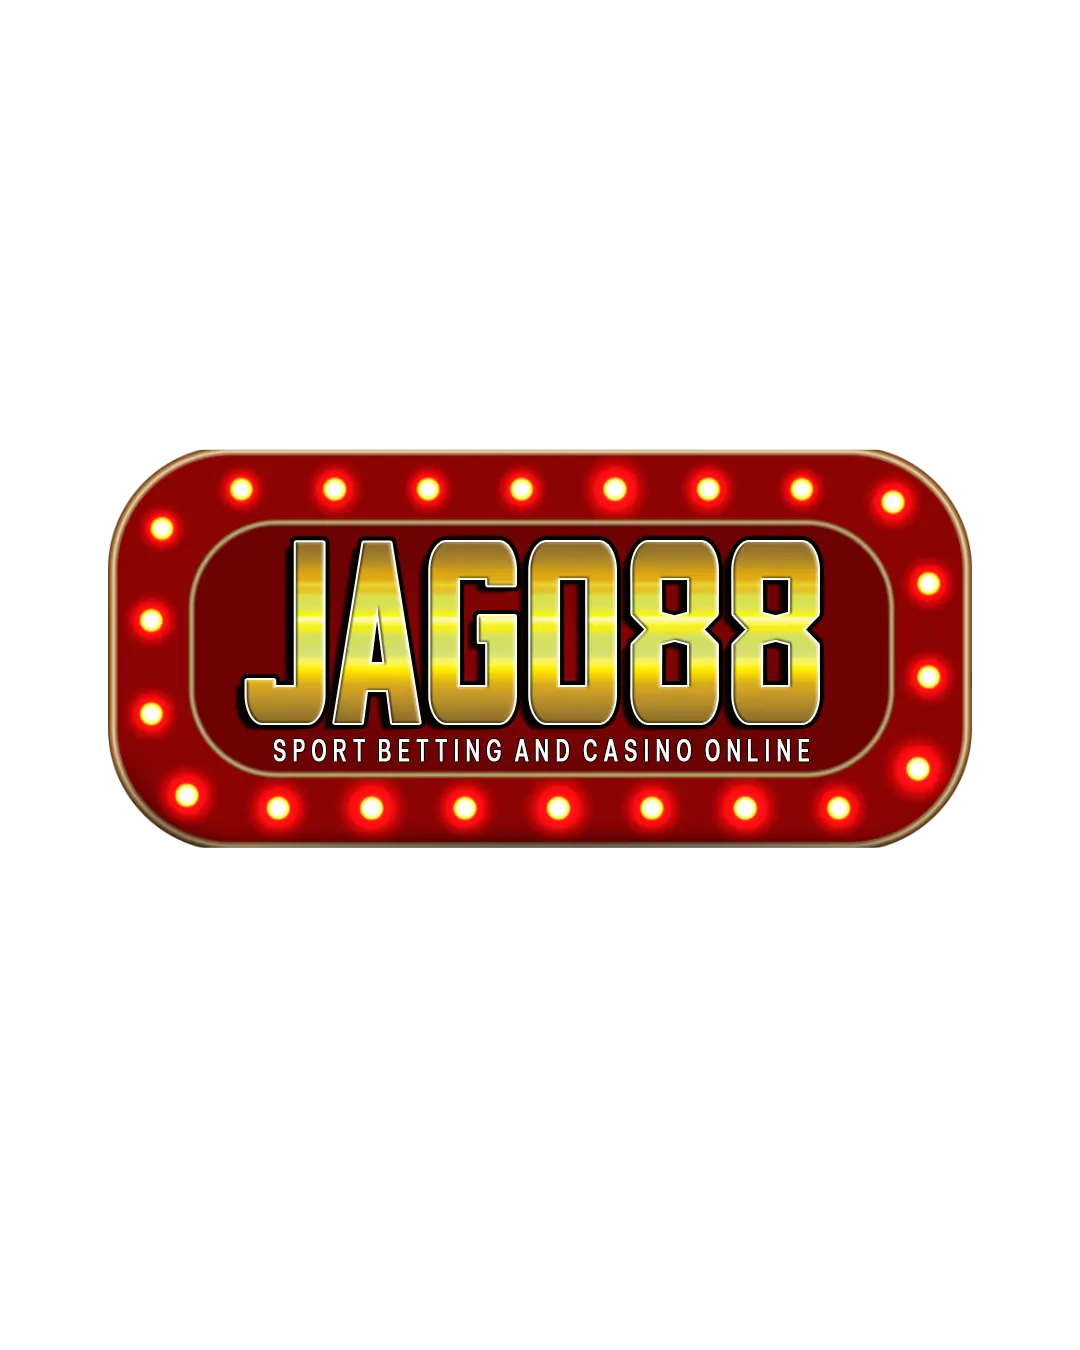 jago88